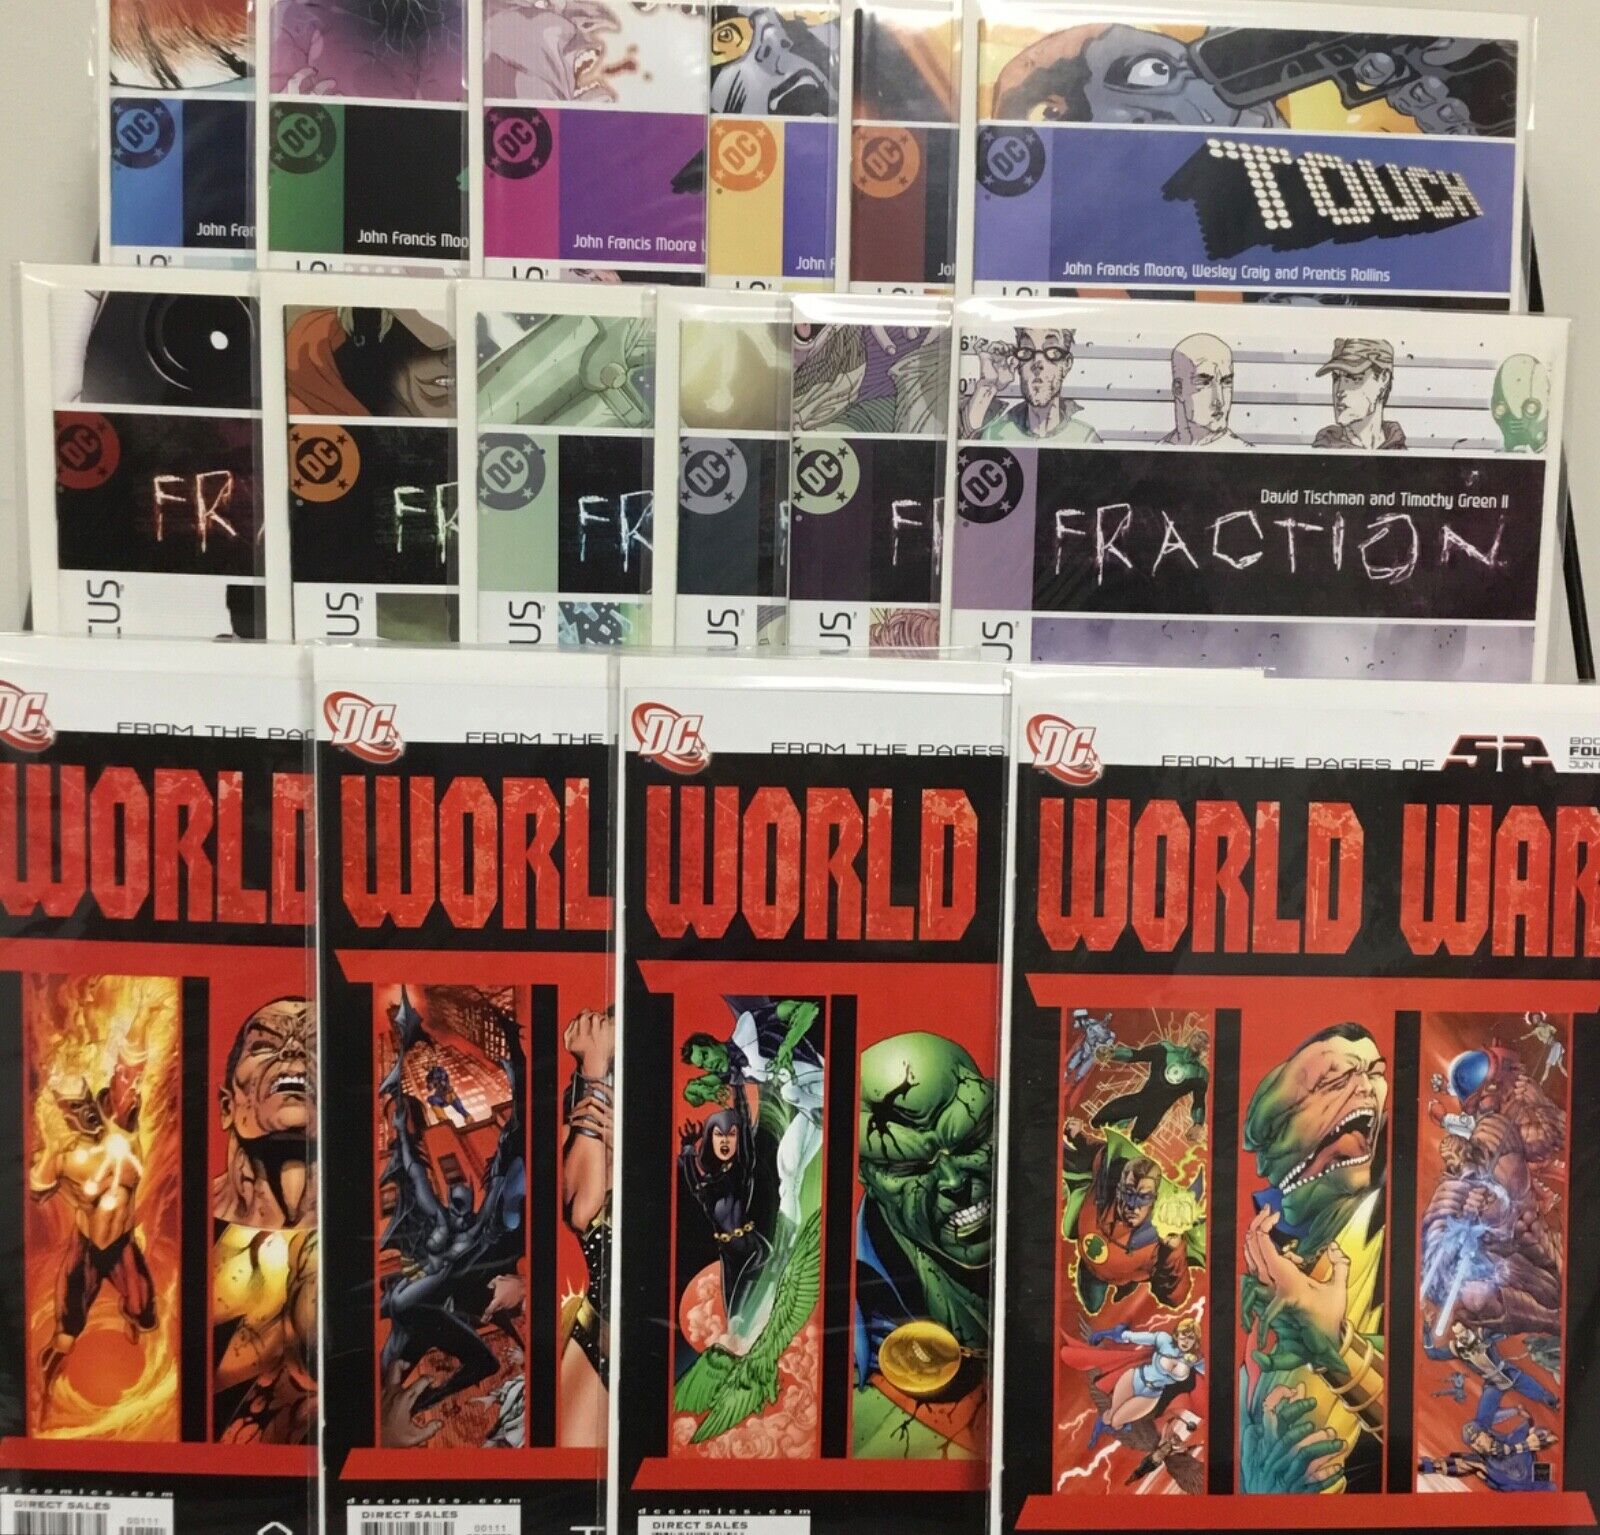 DC Comics Touch 1-6, Fraction 1-6, World War 1-4